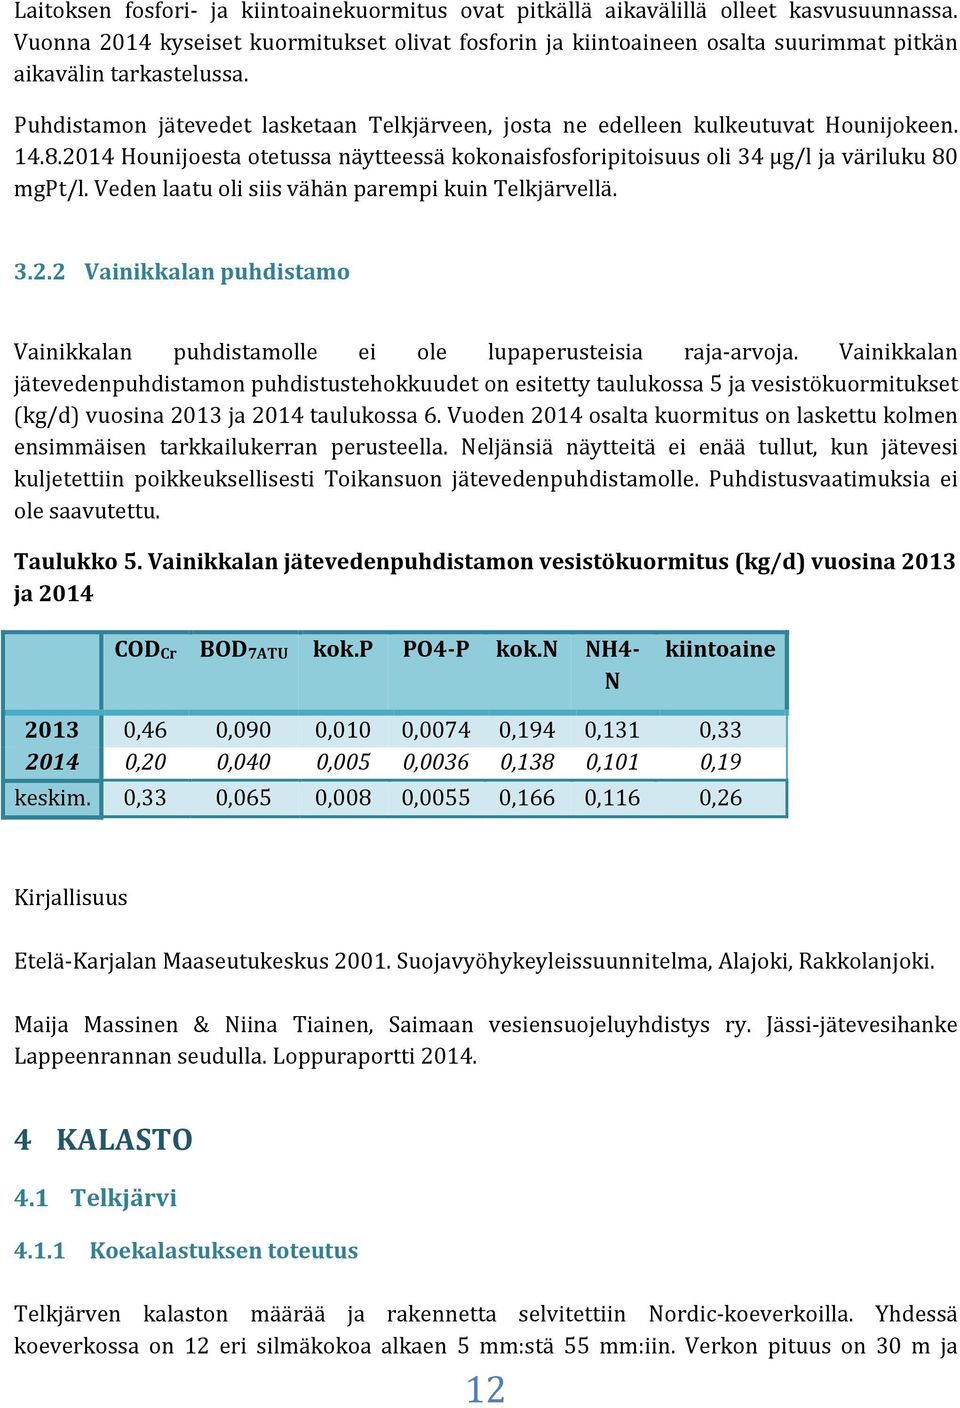 Puhdistamon jätevedet lasketaan Telkjärveen, josta ne edelleen kulkeutuvat Hounijokeen. 14.8.2014 Hounijoesta otetussa näytteessä kokonaisfosforipitoisuus oli 34 µg/l ja väriluku 80 mgpt/l.